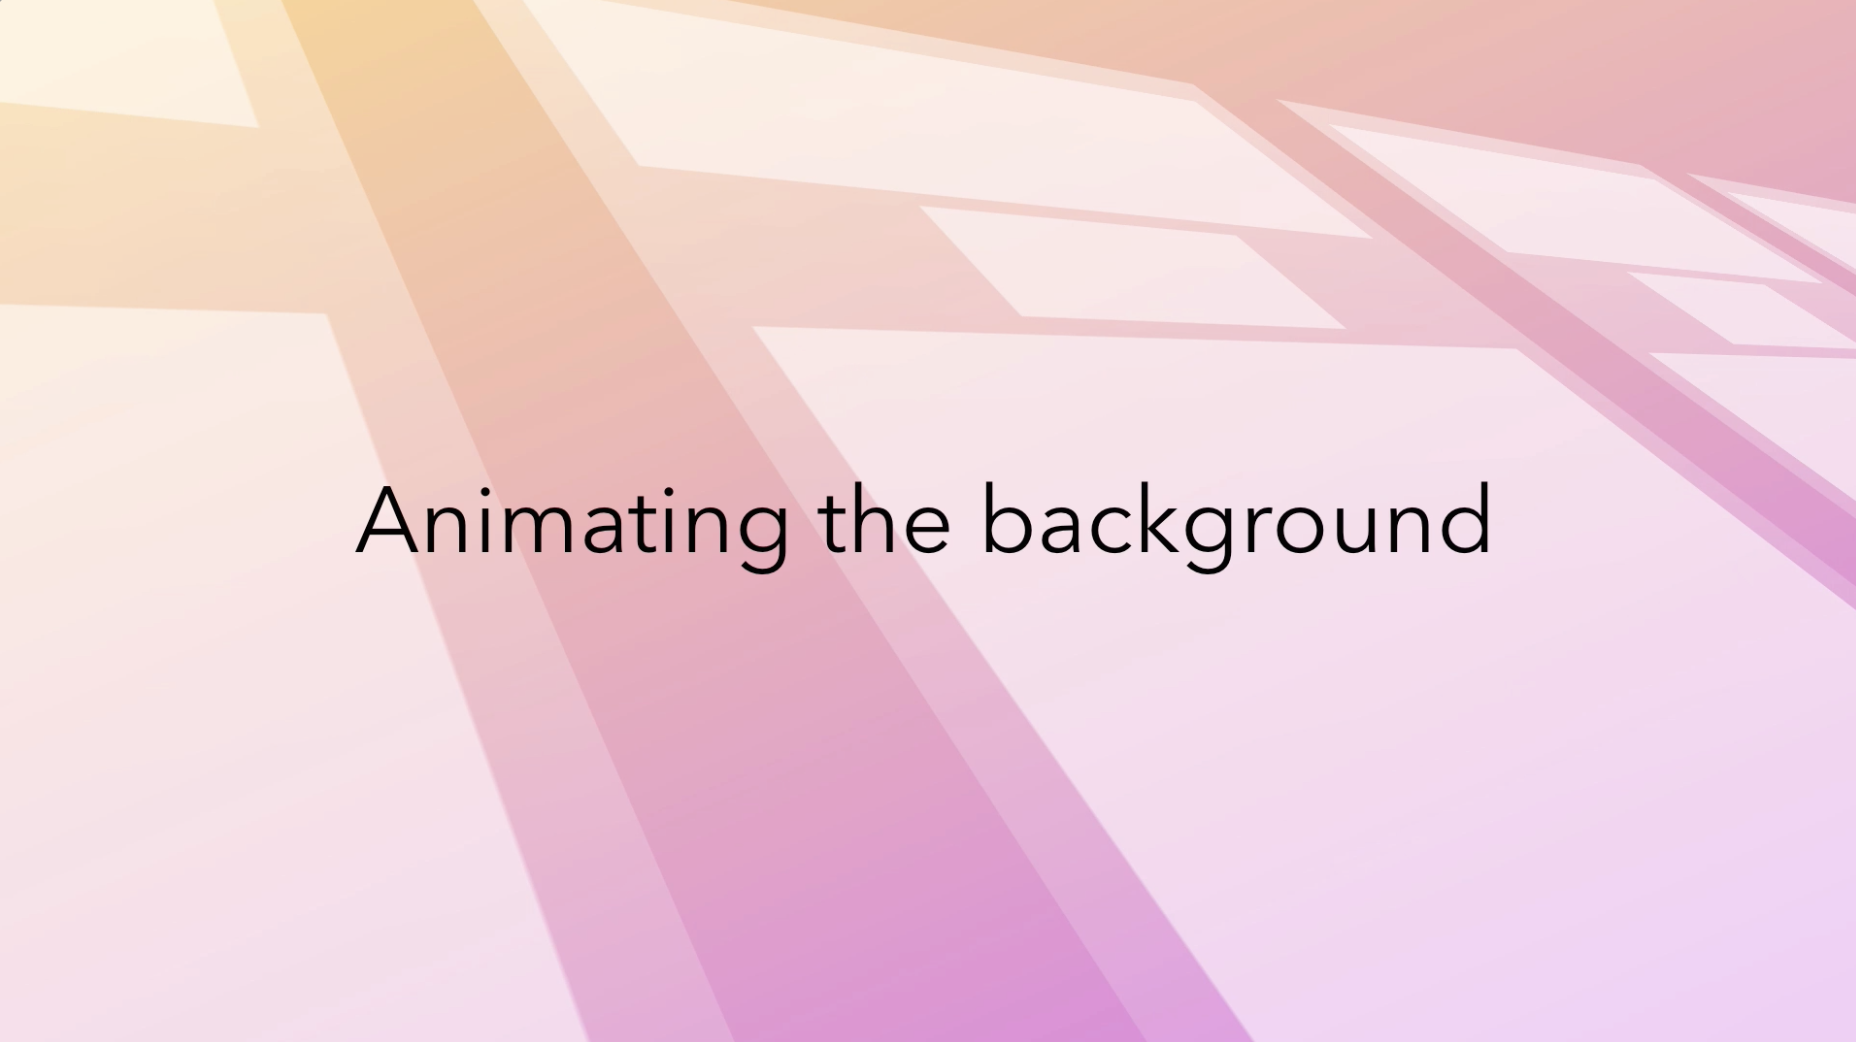 CSS Animation: Trải nghiệm một trang web sống động và hấp dẫn bằng CSS Animation! Hình ảnh đẹp và sinh động sẽ được tạo ra bằng cách sử dụng các công cụ tuyệt vời trong CSS. Bạn sẽ không muốn bỏ lỡ những thước phim động tuyệt vời này!